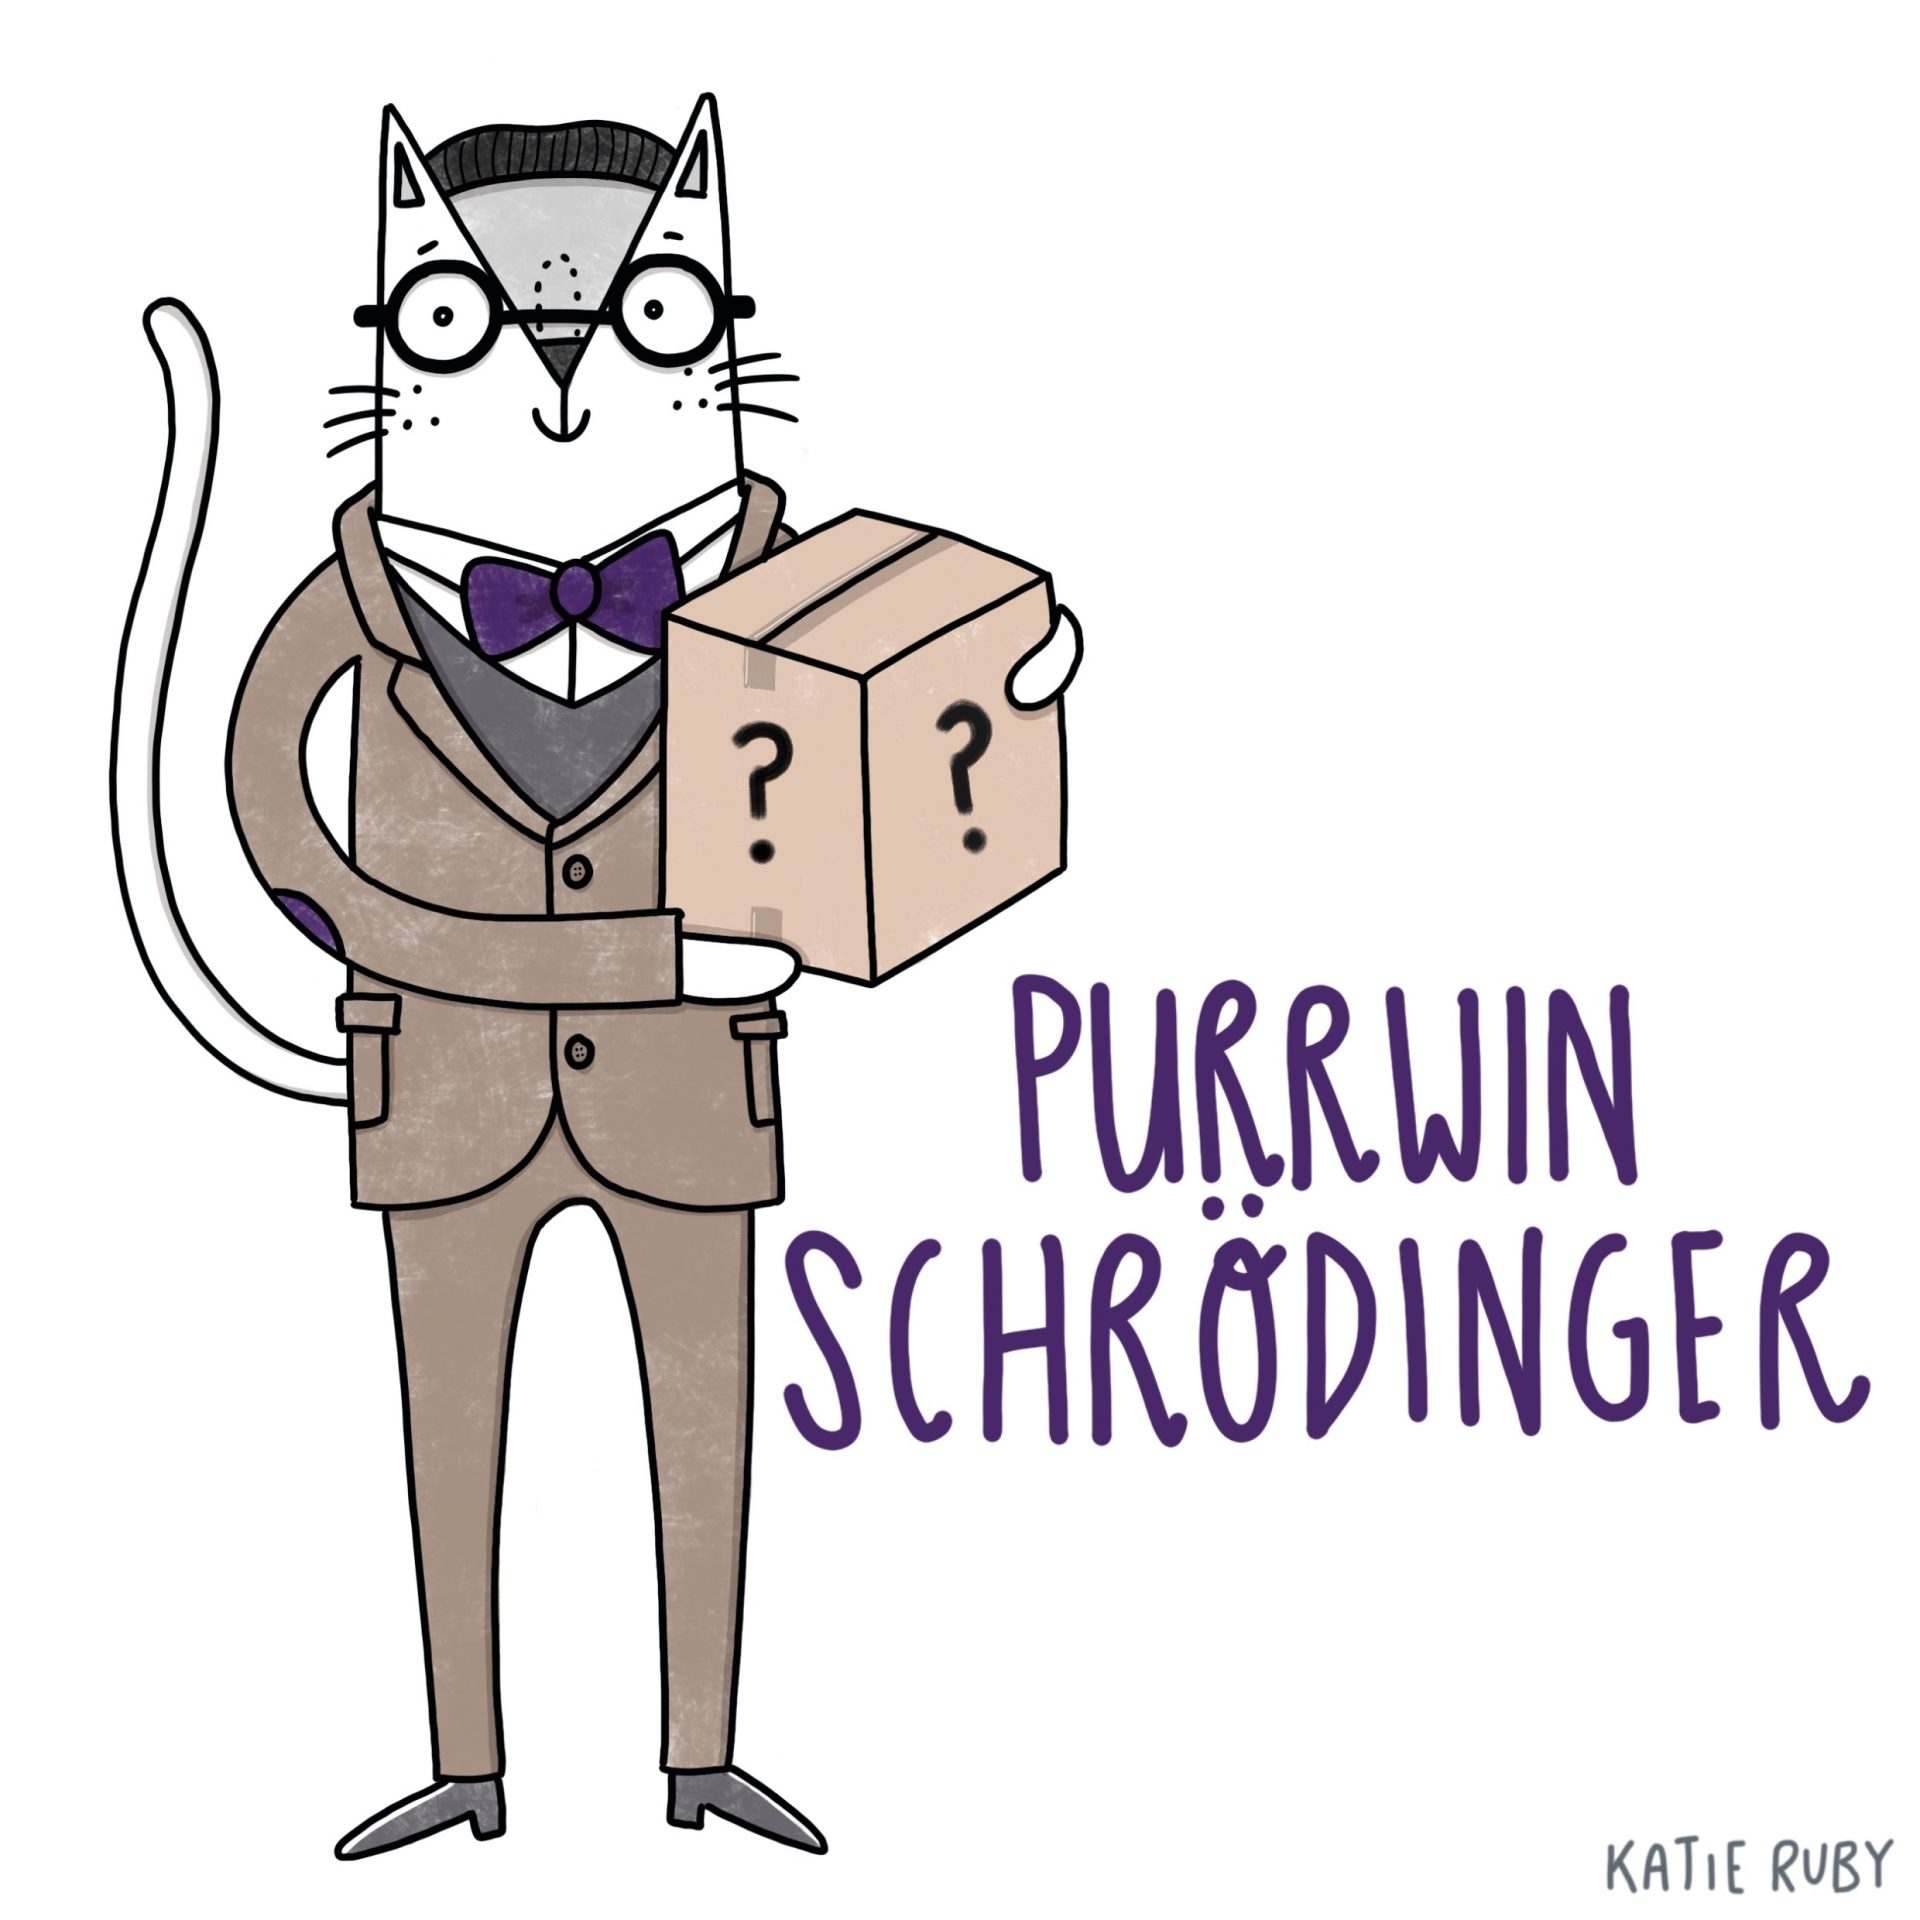 purrwin schrodinger cat pun